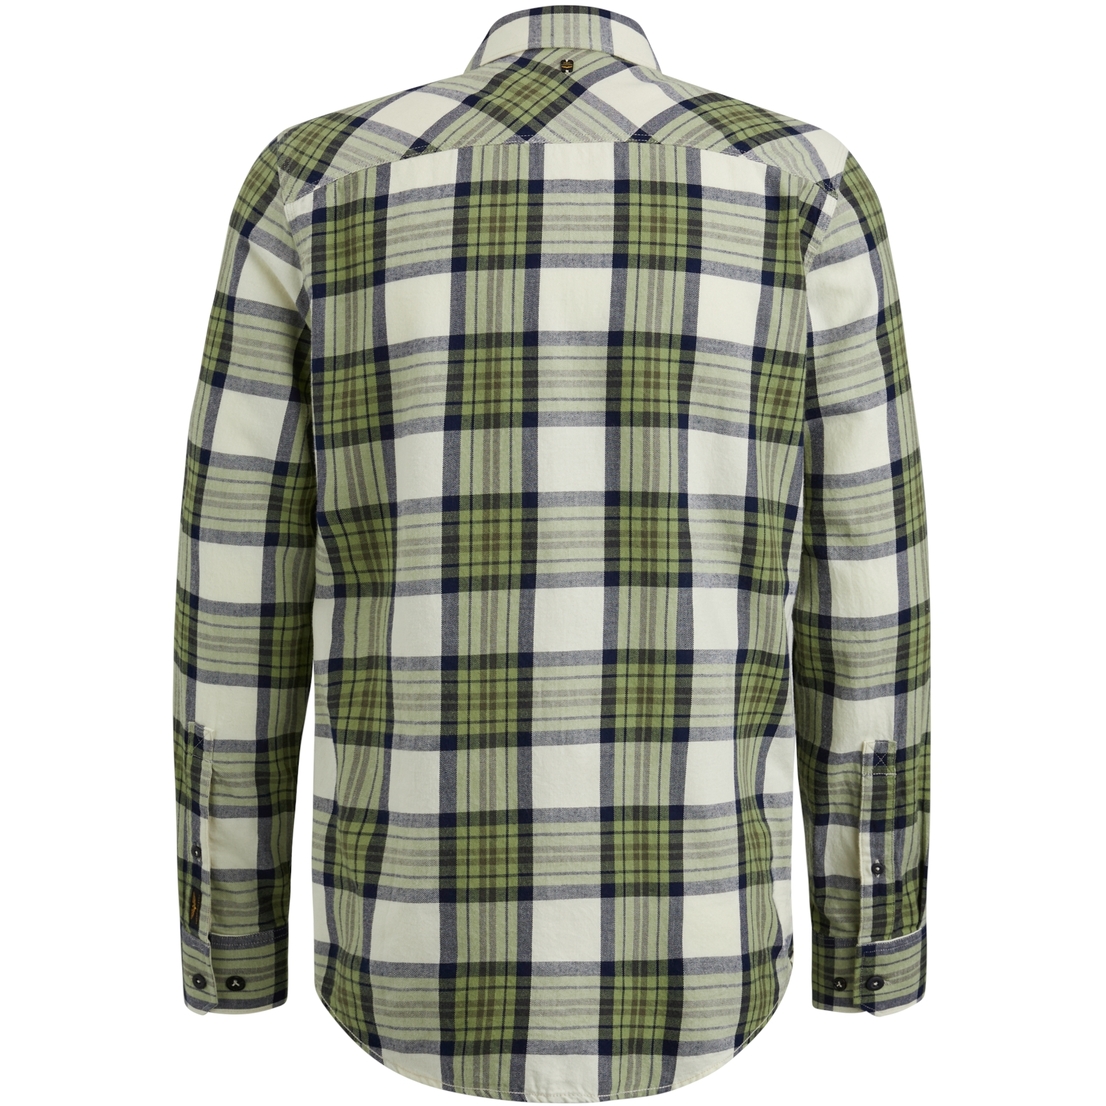 PSI2402202 Long Sleeve Shirt Ctn Twill Check